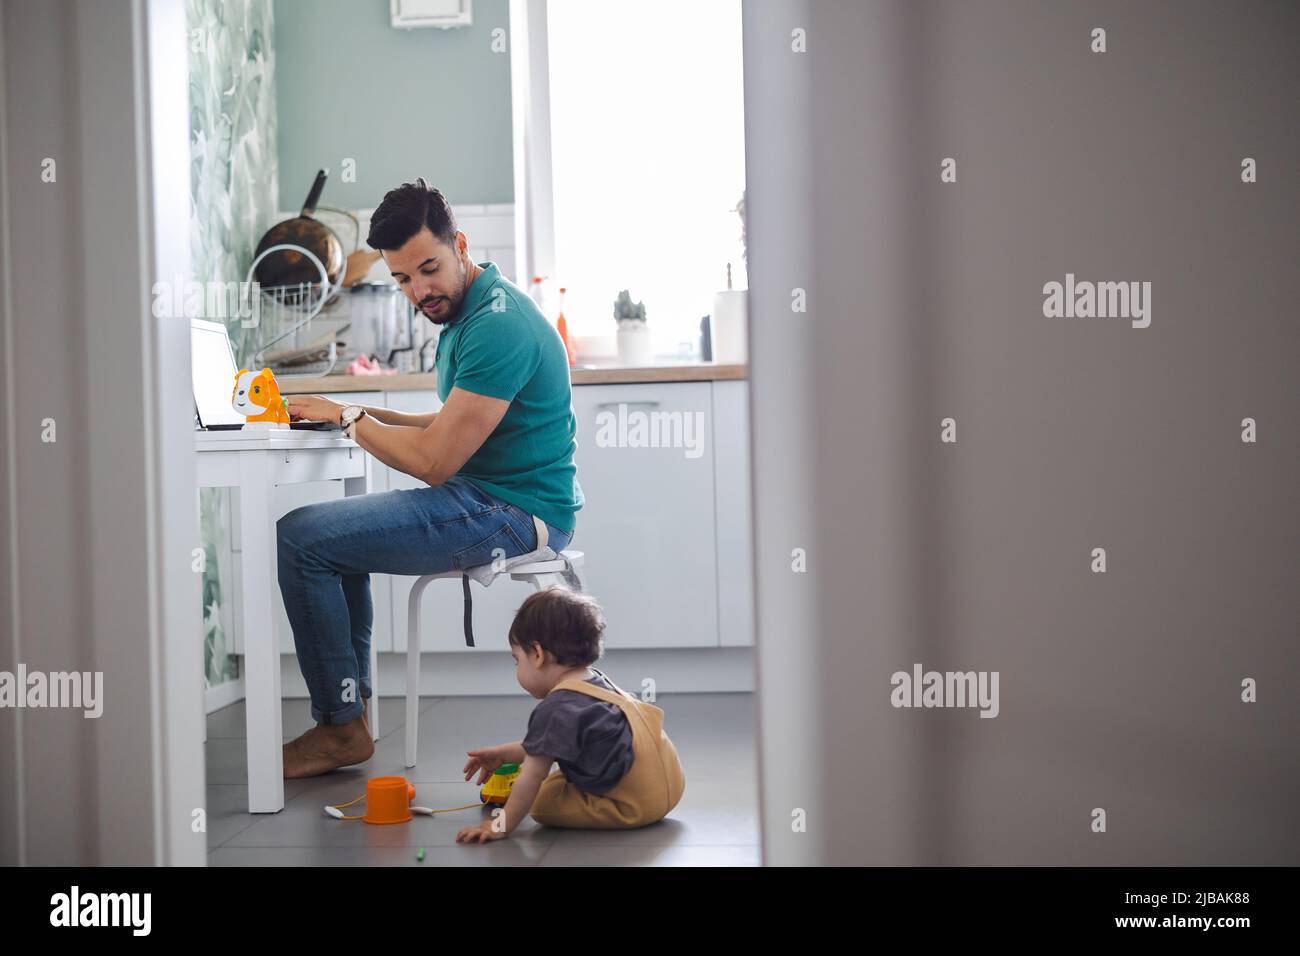 Vater arbeitet am Laptop, während das Kind auf dem Küchenboden spielt Stockfoto